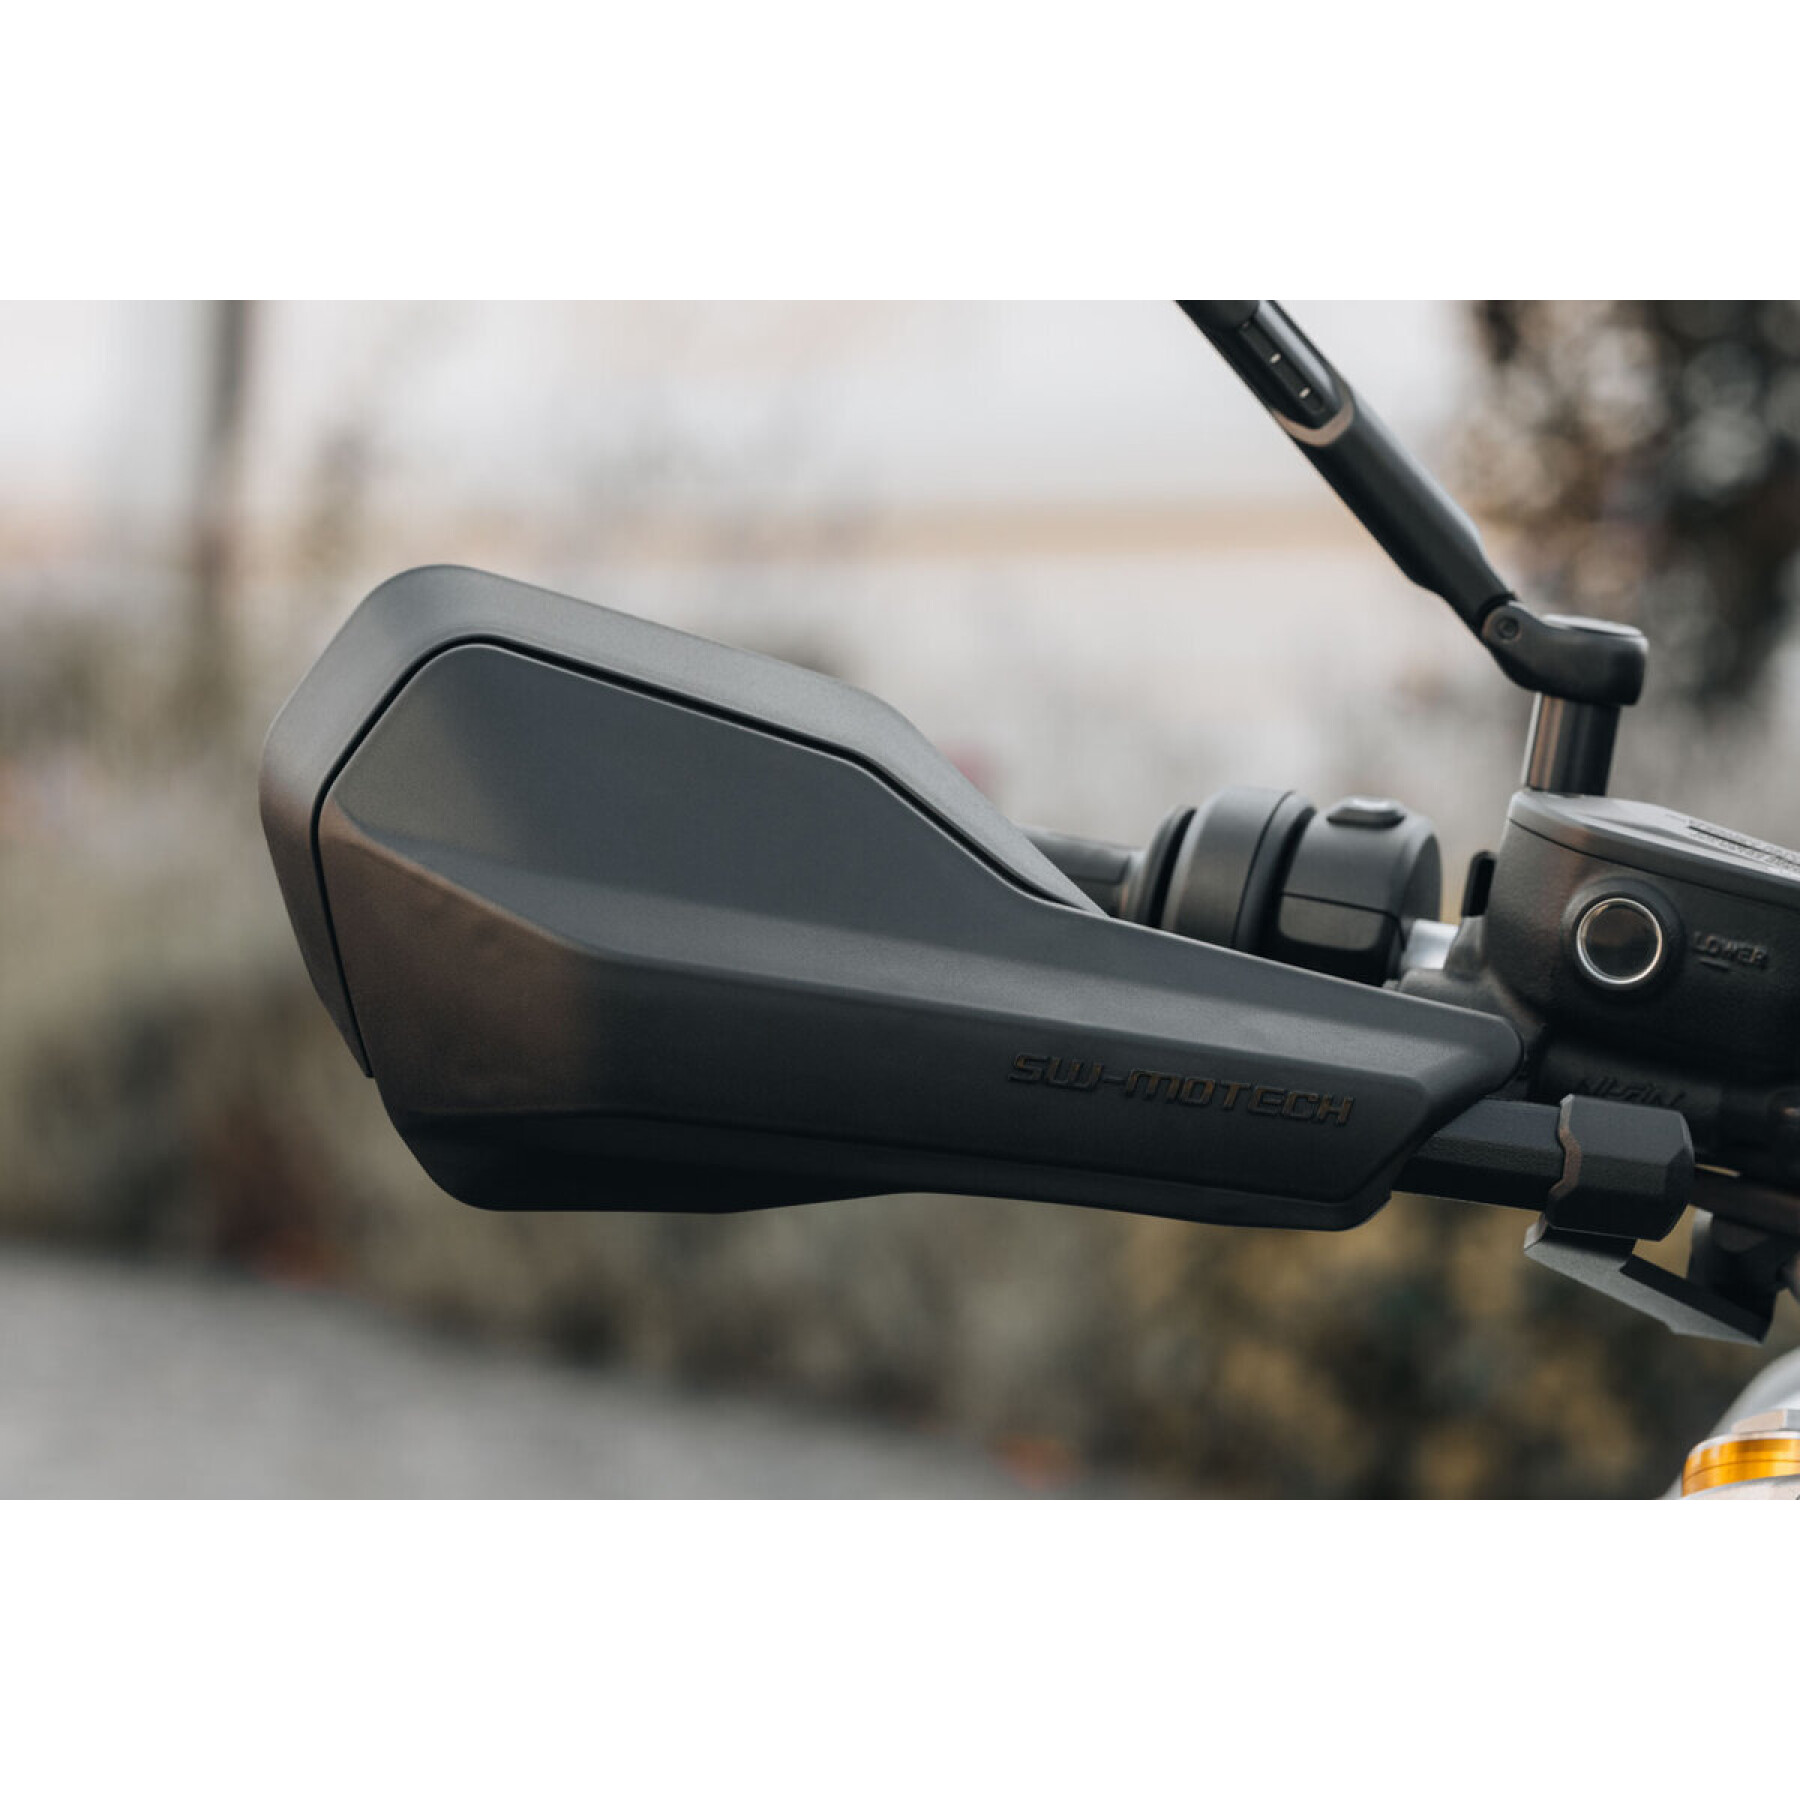 Kit de proteção de mão para motociclos para guiadores ocos SW-Motech Sport